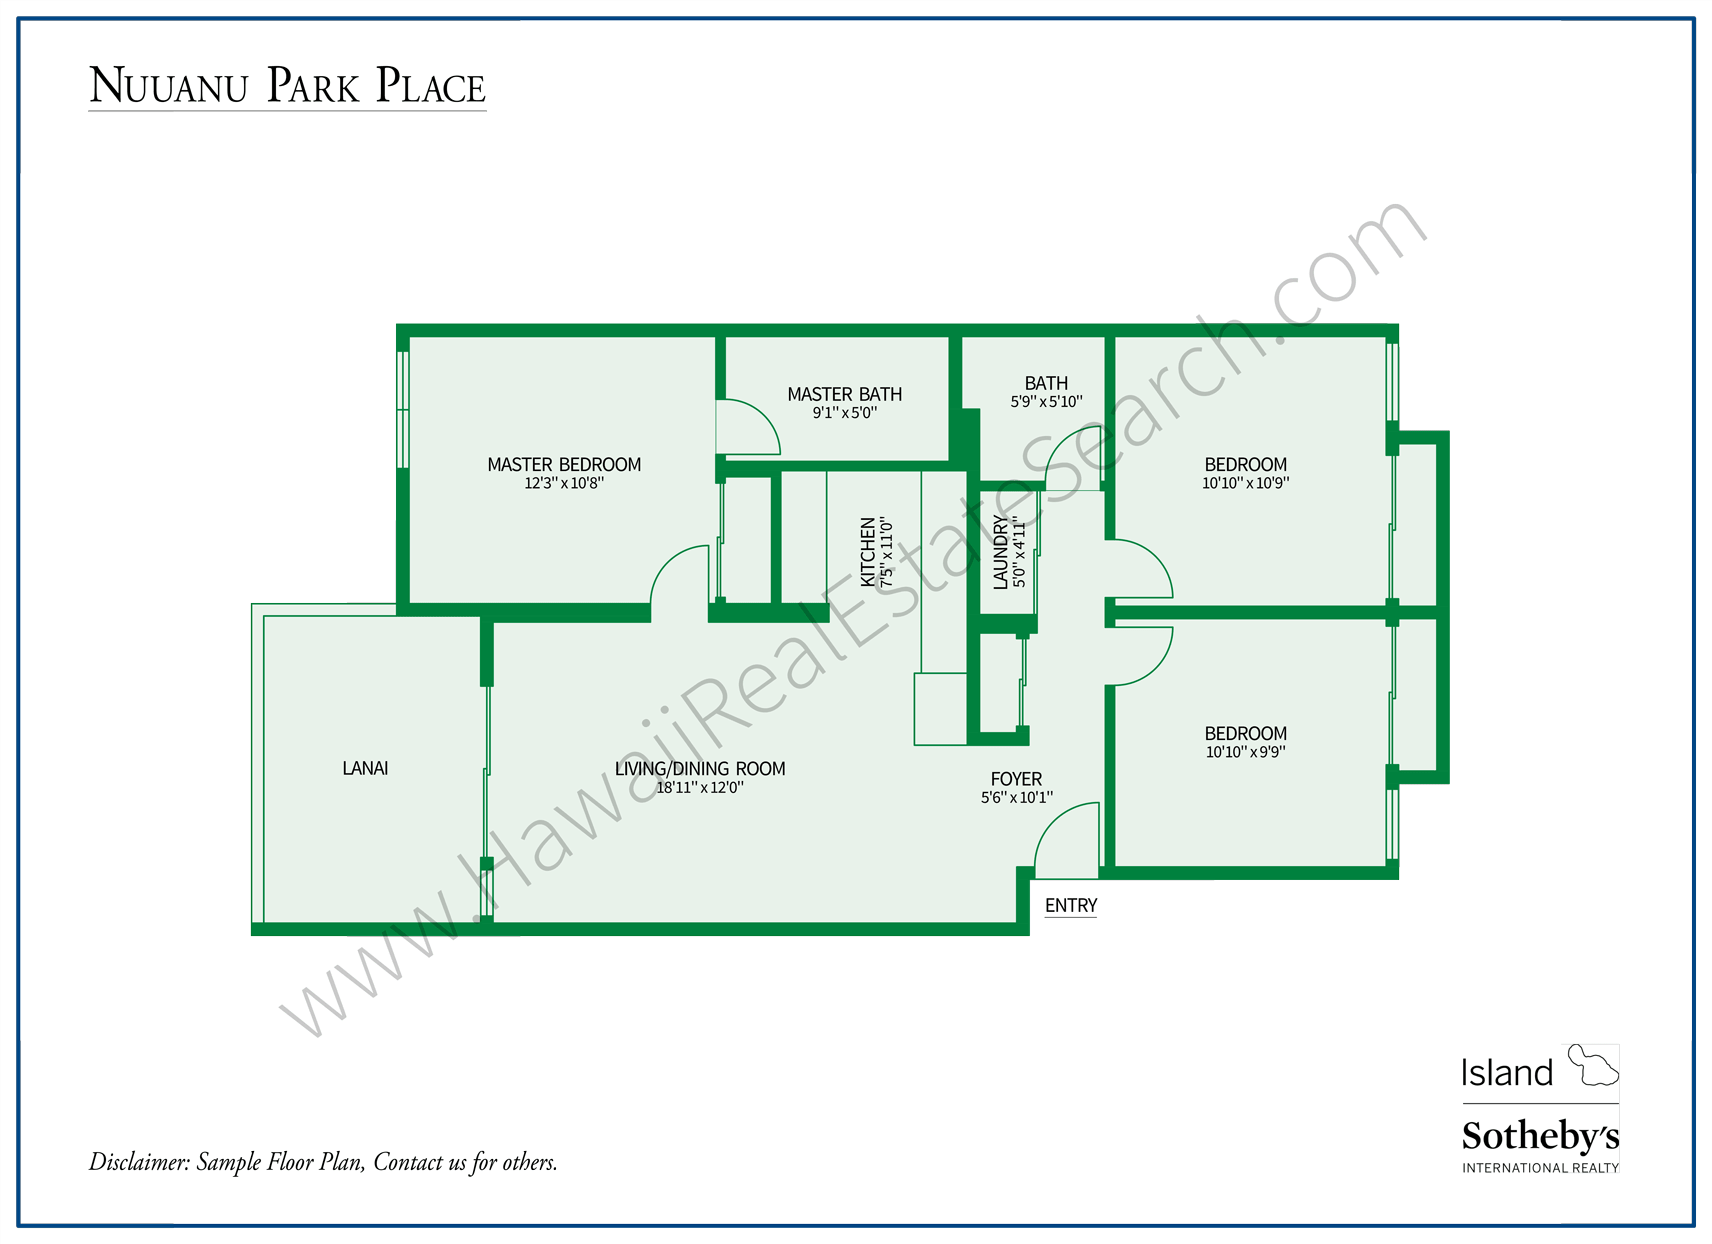 Floor Plan Nuuanu Park Place